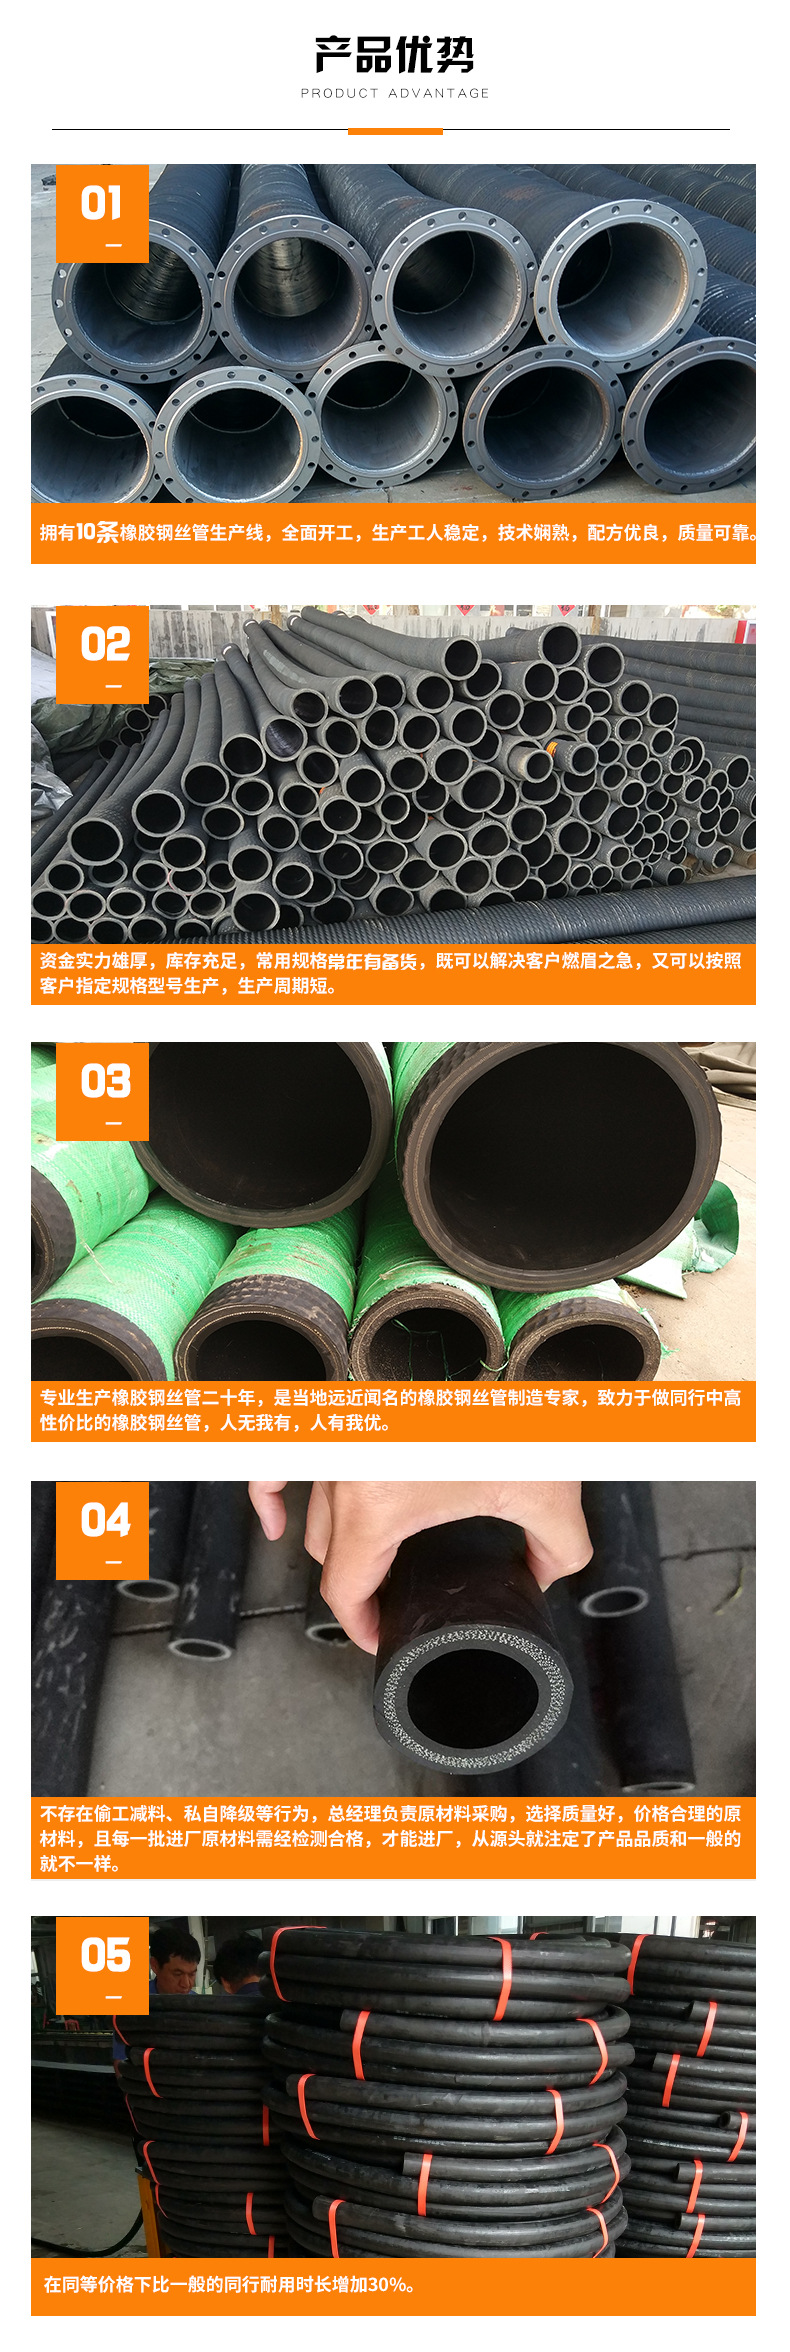 耐磨抽沙排泥橡胶钢丝管 大口径 优质耐用 厂家直供示例图5